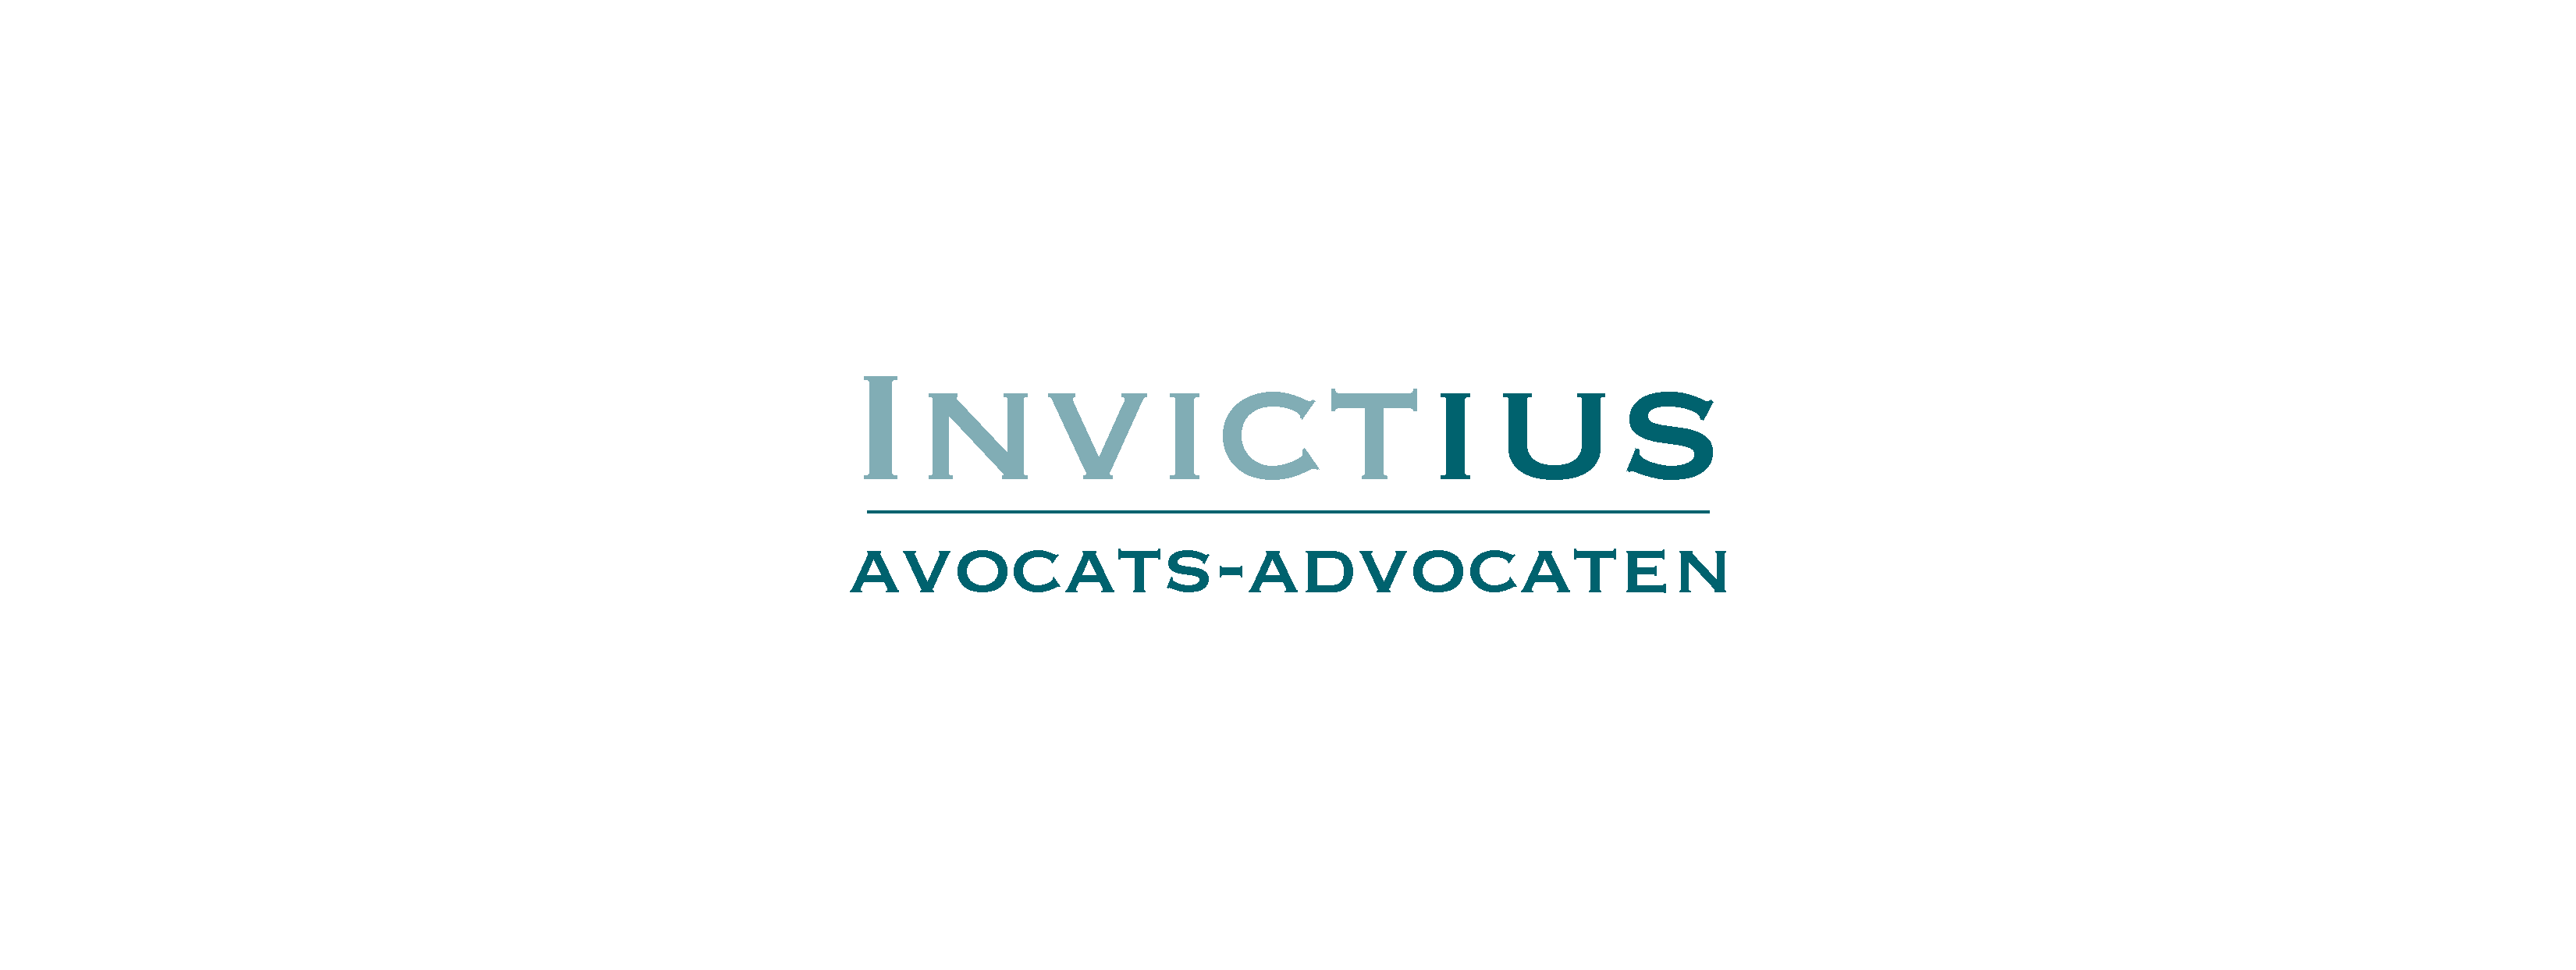 Avocats-advocaten